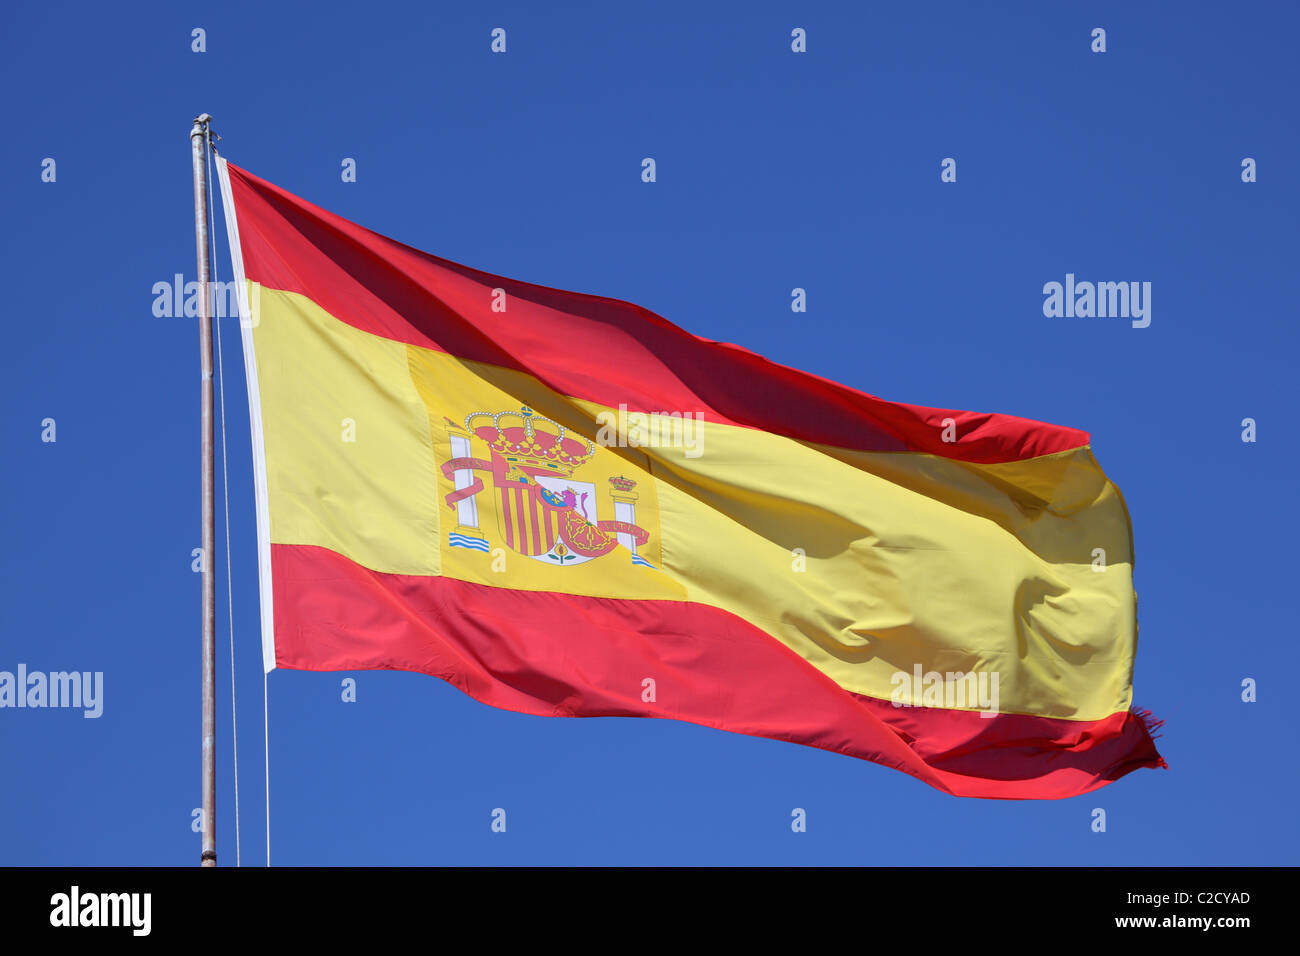 Pabellón de España contra un cielo azul Foto de stock